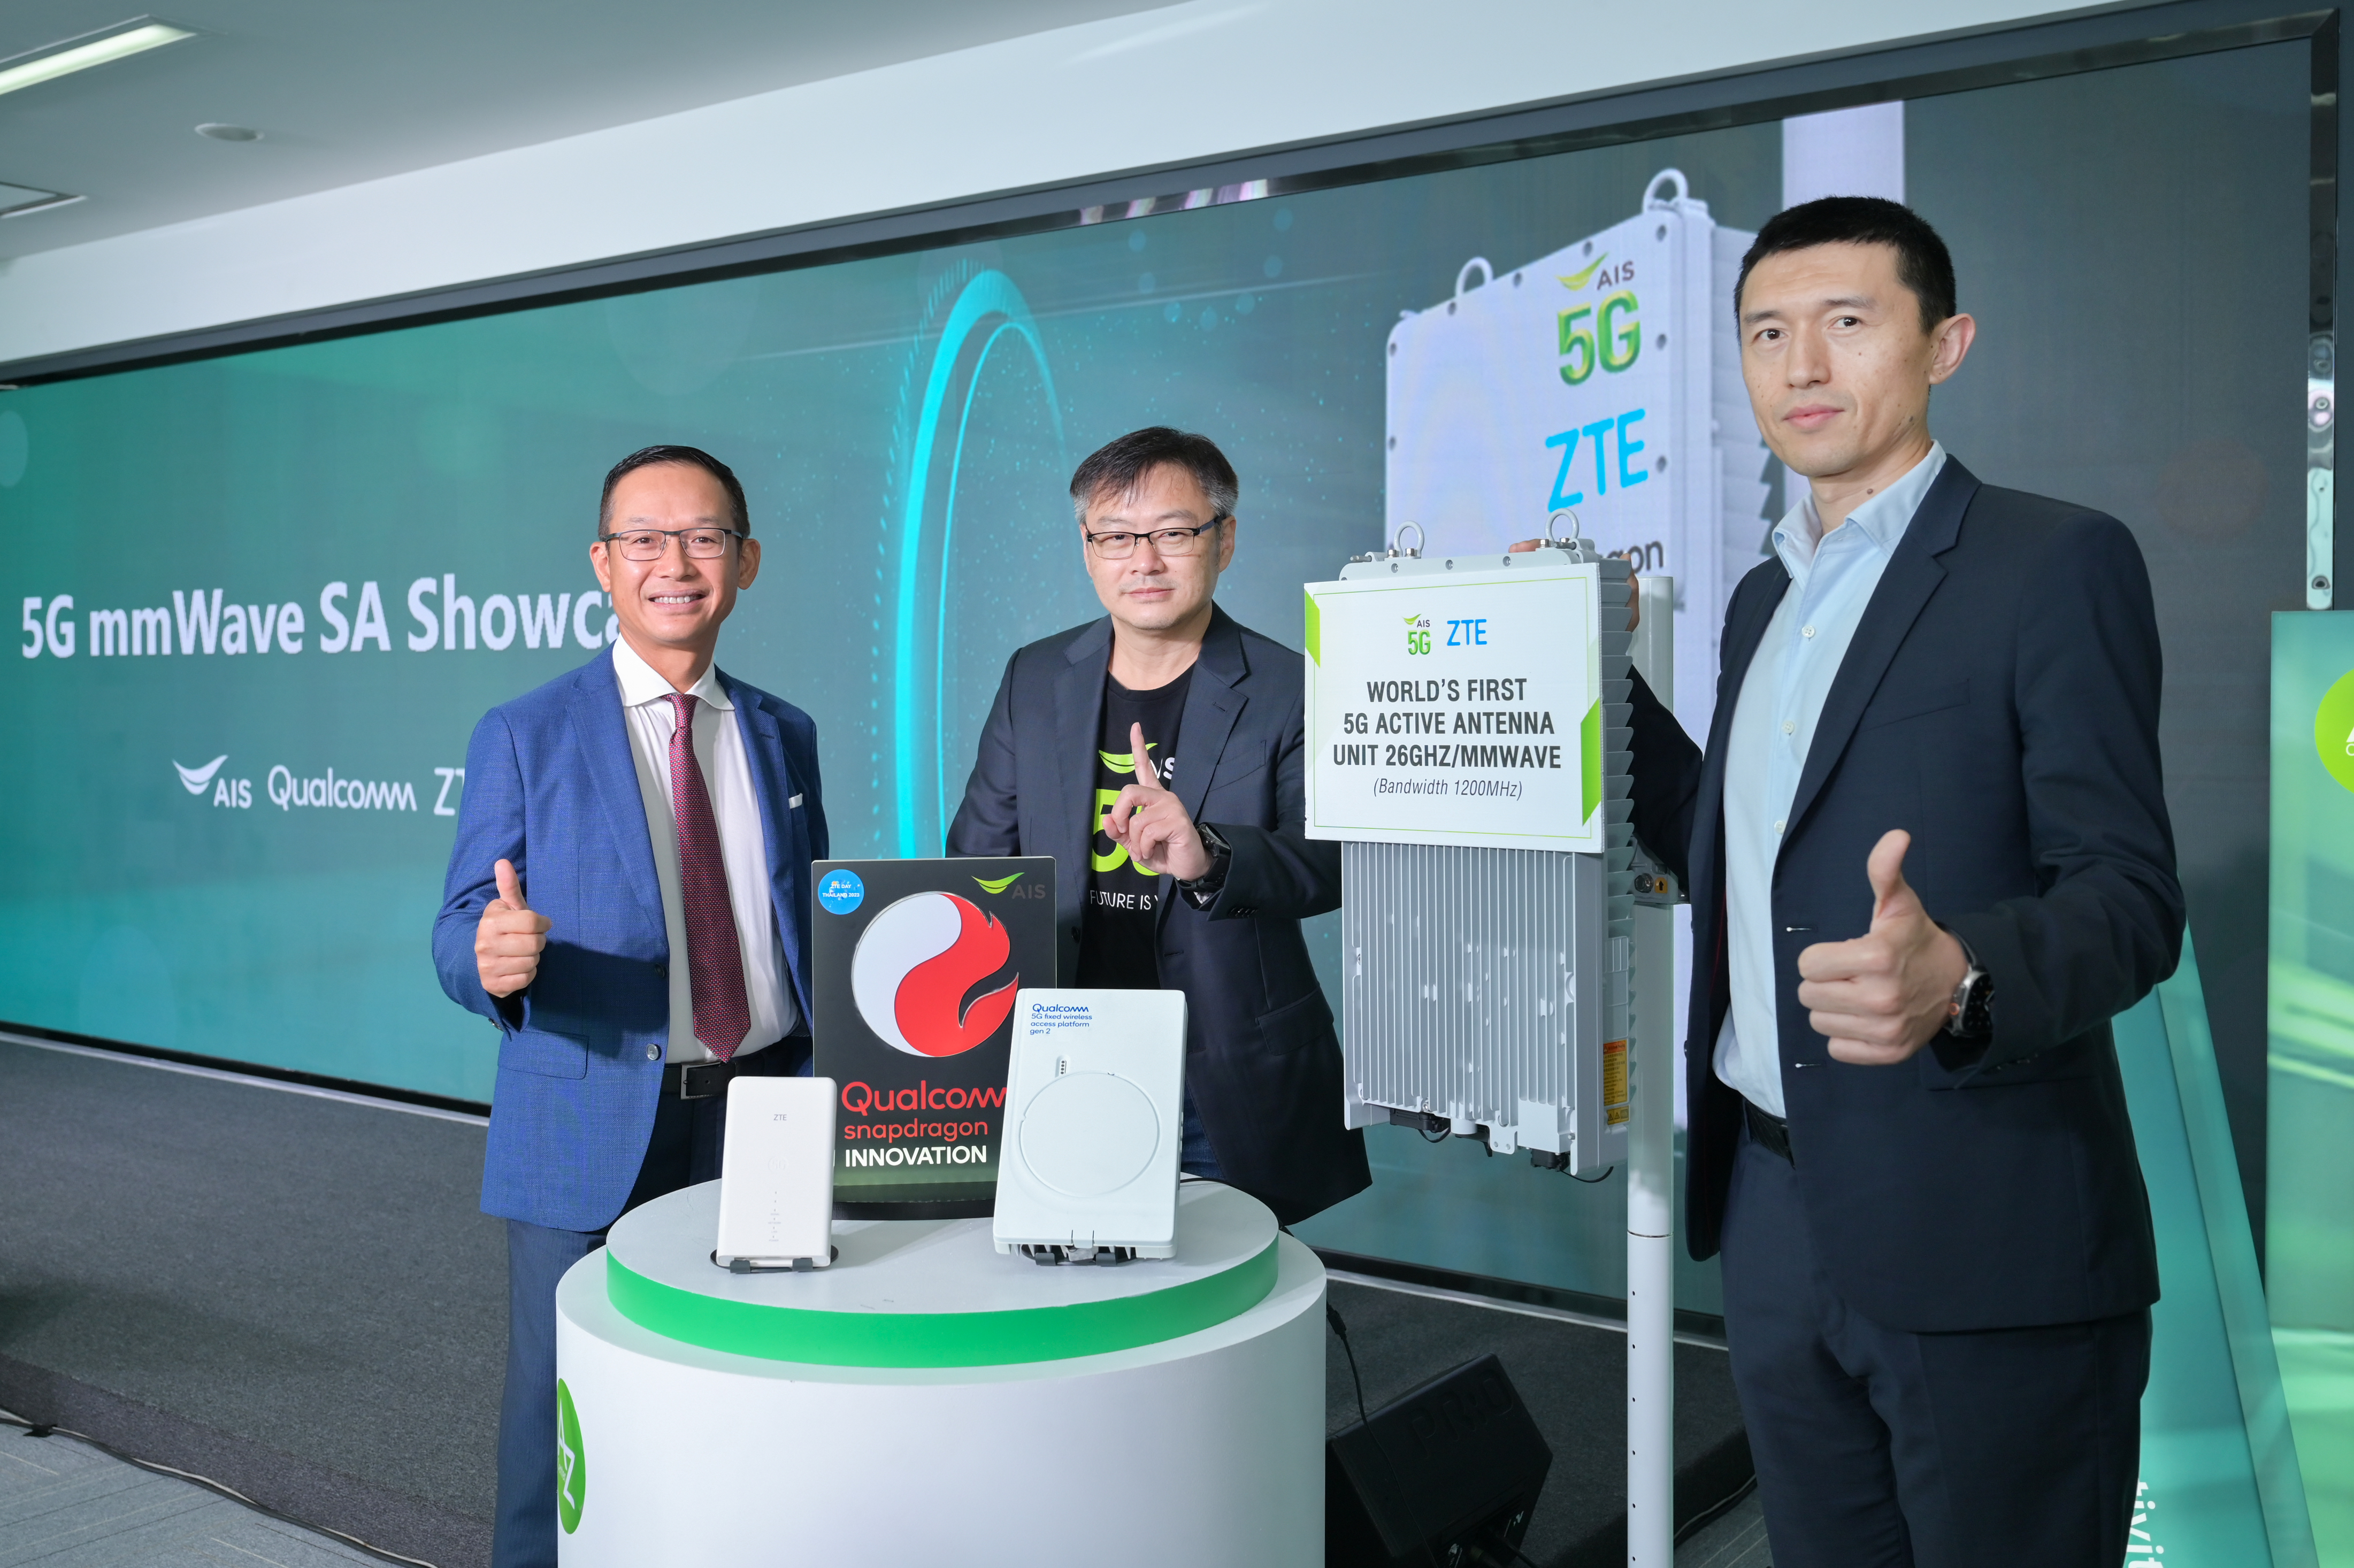 ความเร็วสุดทึ่ง!! AIS จับมือ ZTE และ Qualcomm เปิดตัว 5G mmWave SA ย่านความถี่ 26GHz ครั้งแรกในไทยและความจุ 1200 MHz แห่งเดียวในโลก